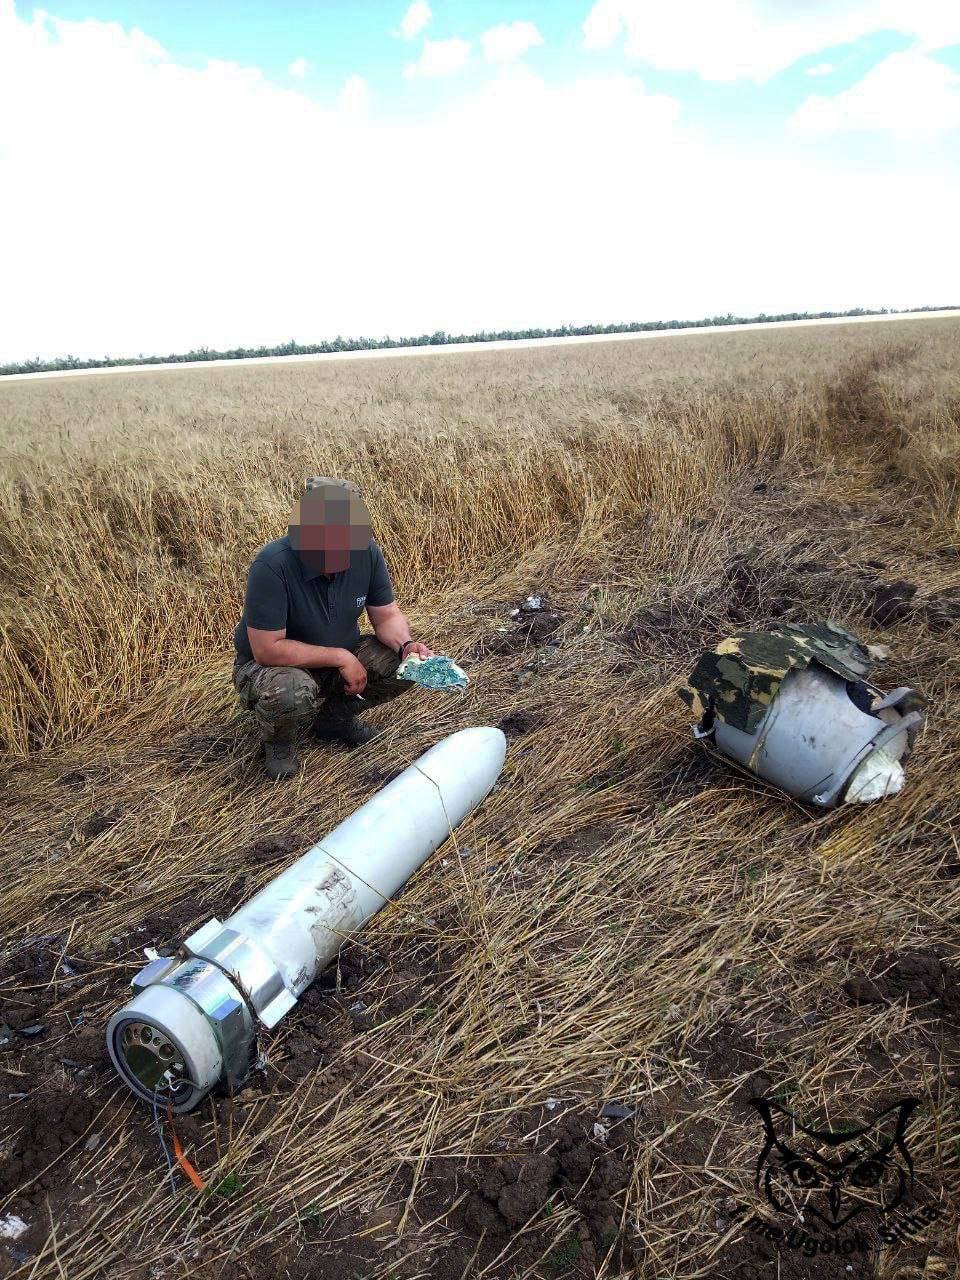 Nga tung bằng chứng tóm được siêu tên lửa Storm Shadow Anh viện trợ cho Ukraine - Ảnh 1.